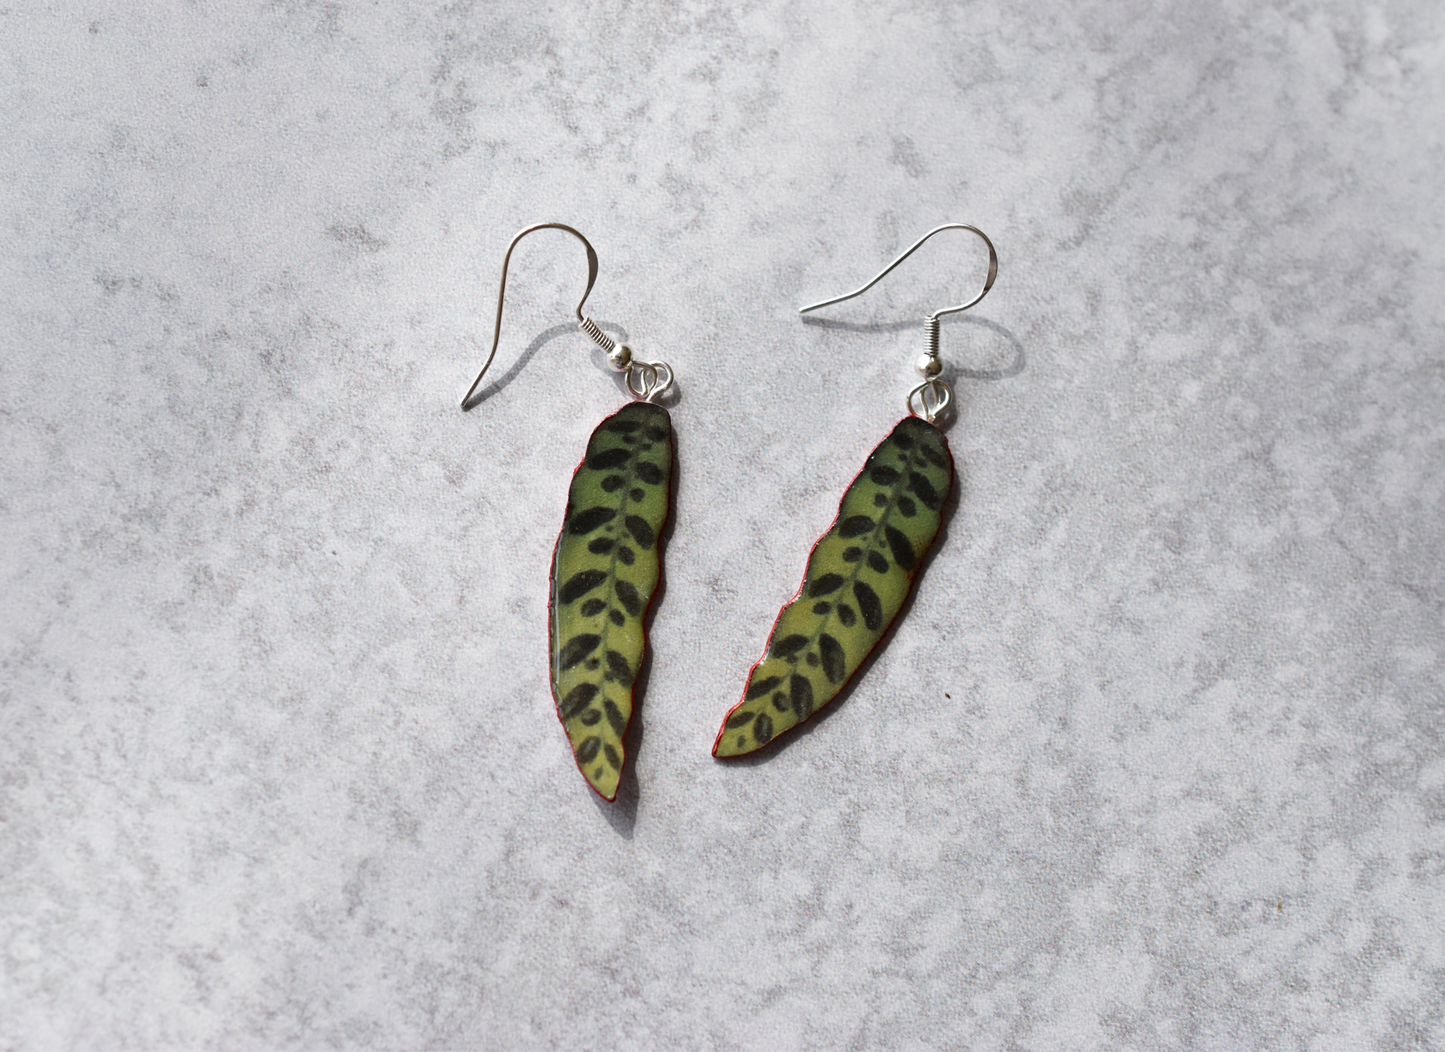 Goeppertia Insignis “Rattlesnake” Plant Earrings | Leaf Earrings